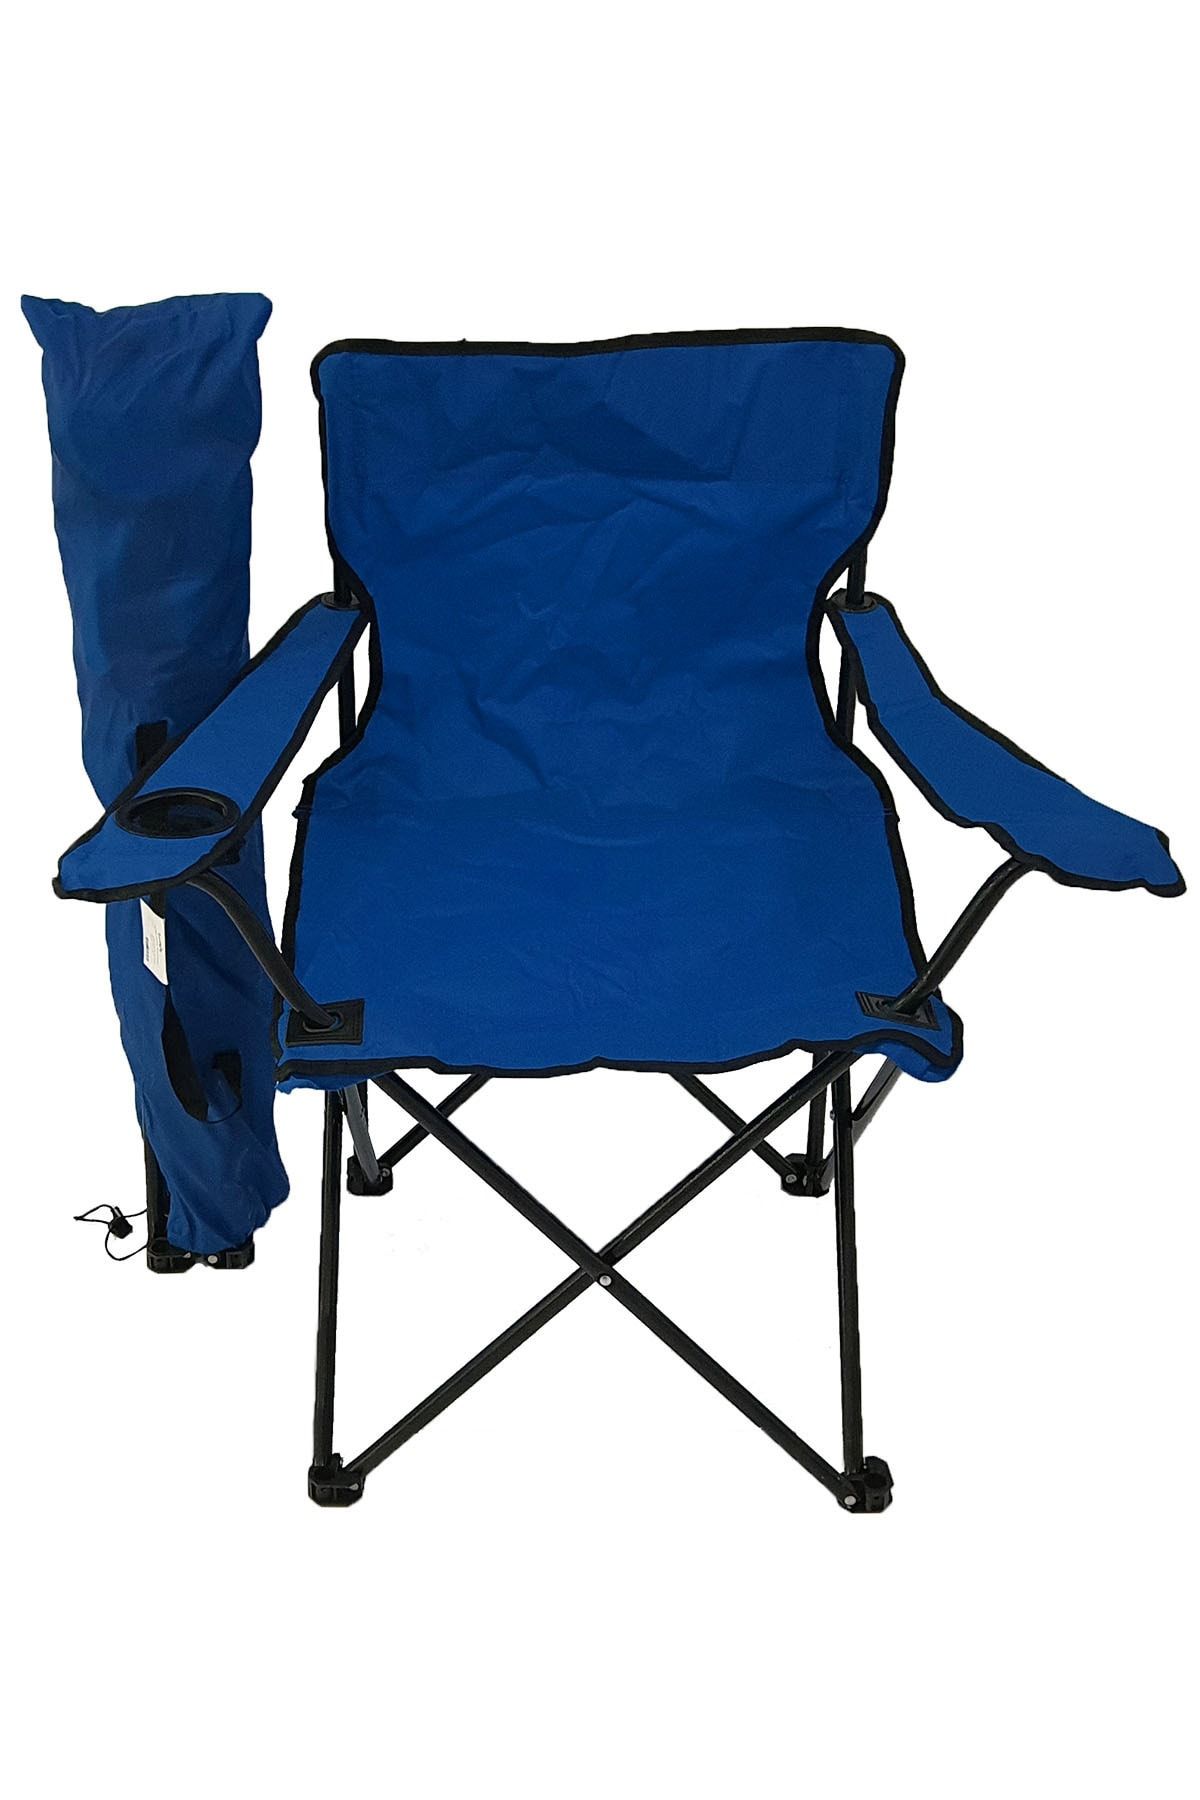 Bofigo Kamp Sandalyesi Piknik Sandalyesi Katlanır Sandalye Taşıma Çantalı